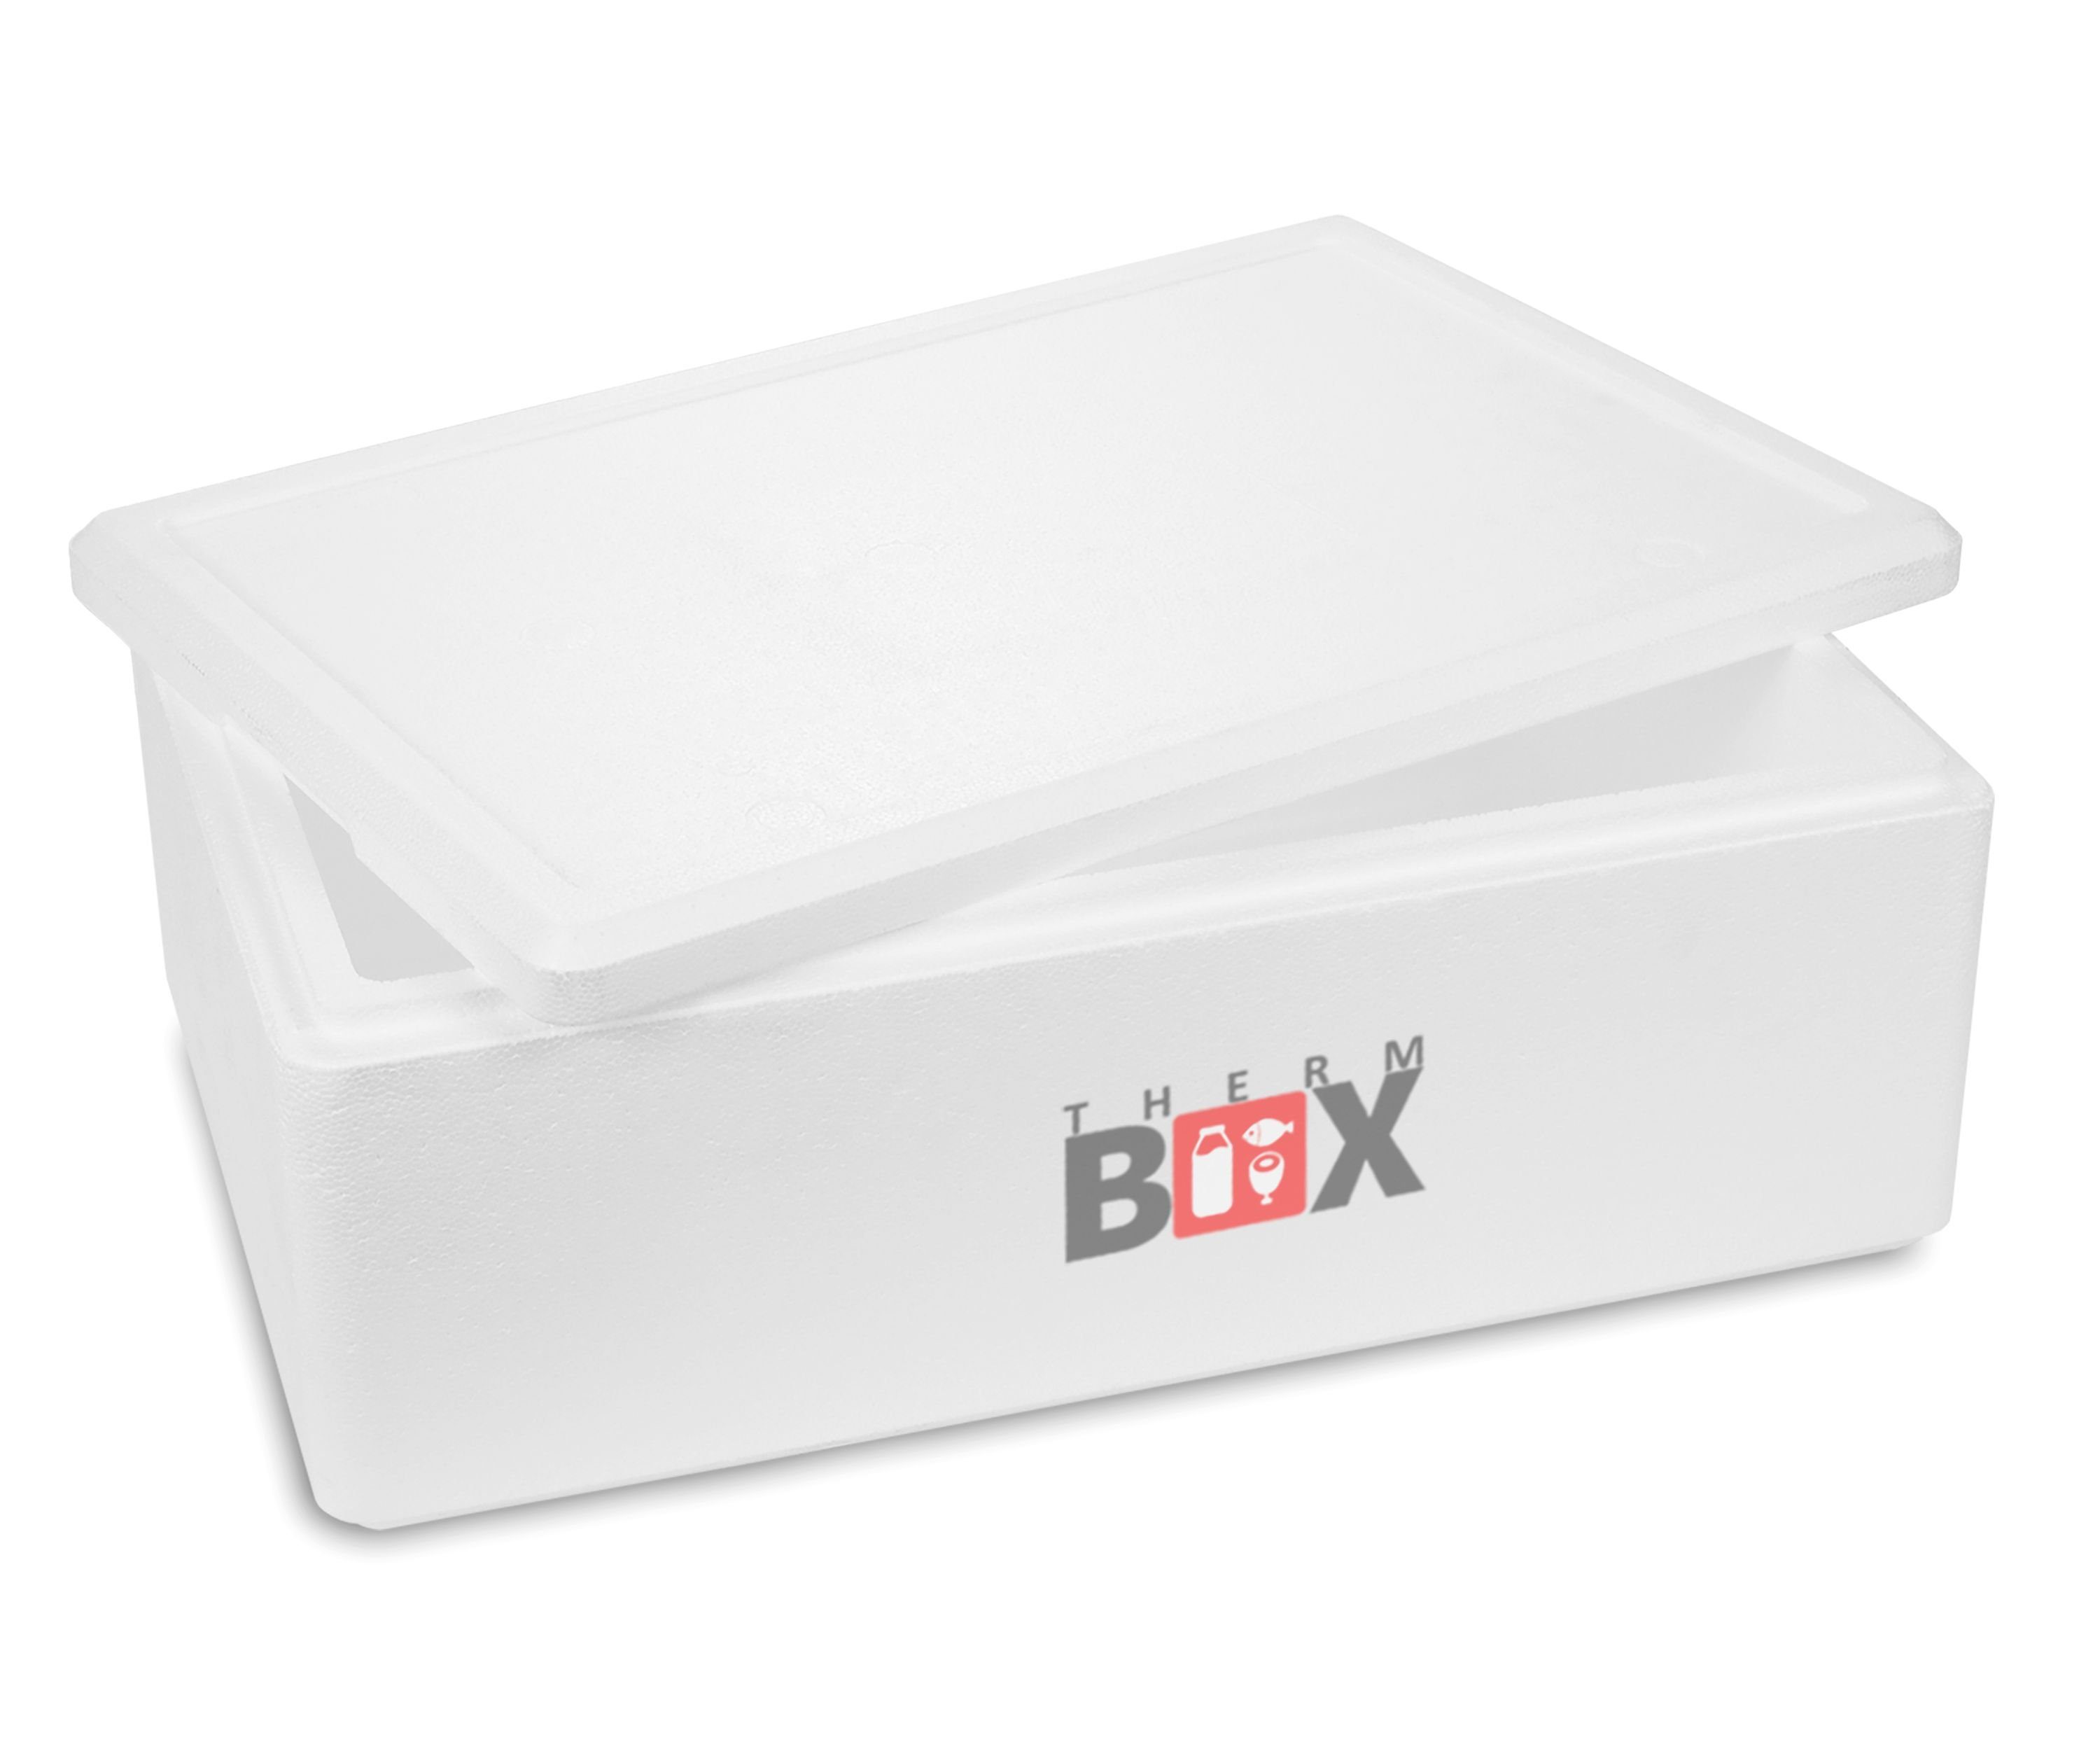 THERM-BOX Thermobehälter Styroporbox 29W Wand: 3cm 29,1L Innenmaß: 53x33x16cm, Styropor-Verdichtet, (1, 0-tlg., Box mit Deckel im Karton), Isolierbox Thermobox Kühlbox Warmhaltebox Wiederverwendbar